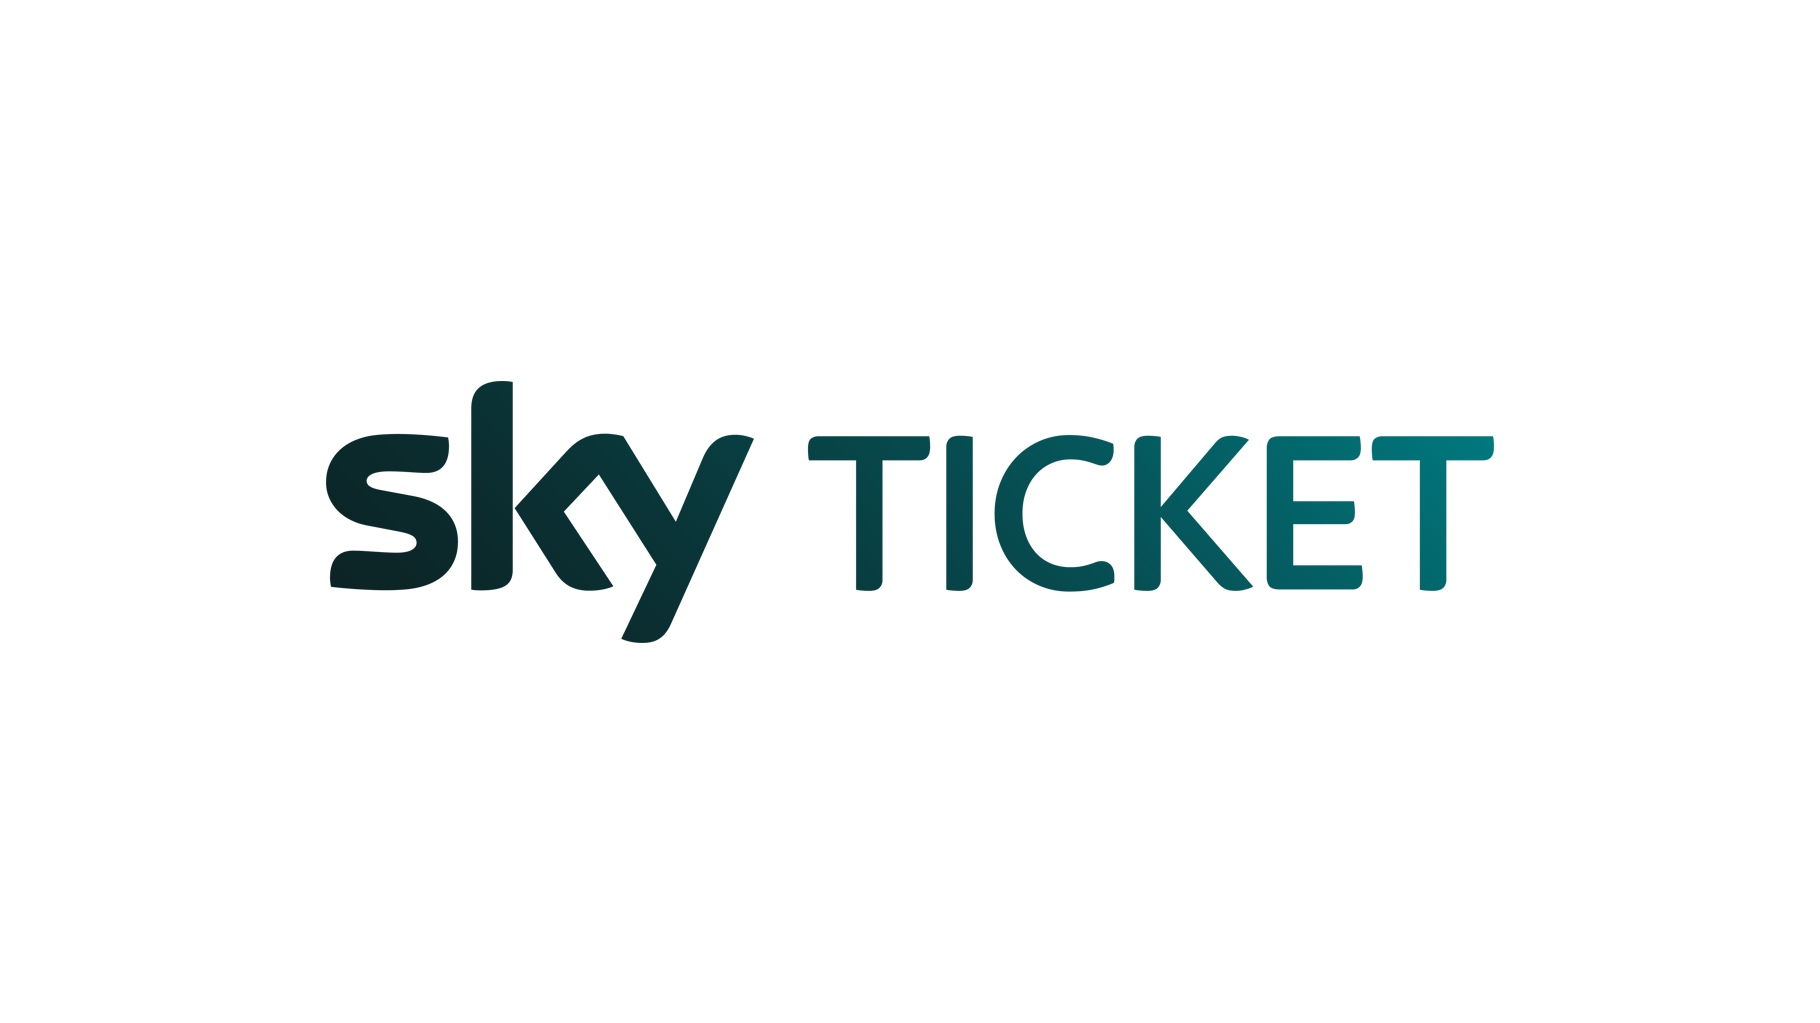 SKY Ticket